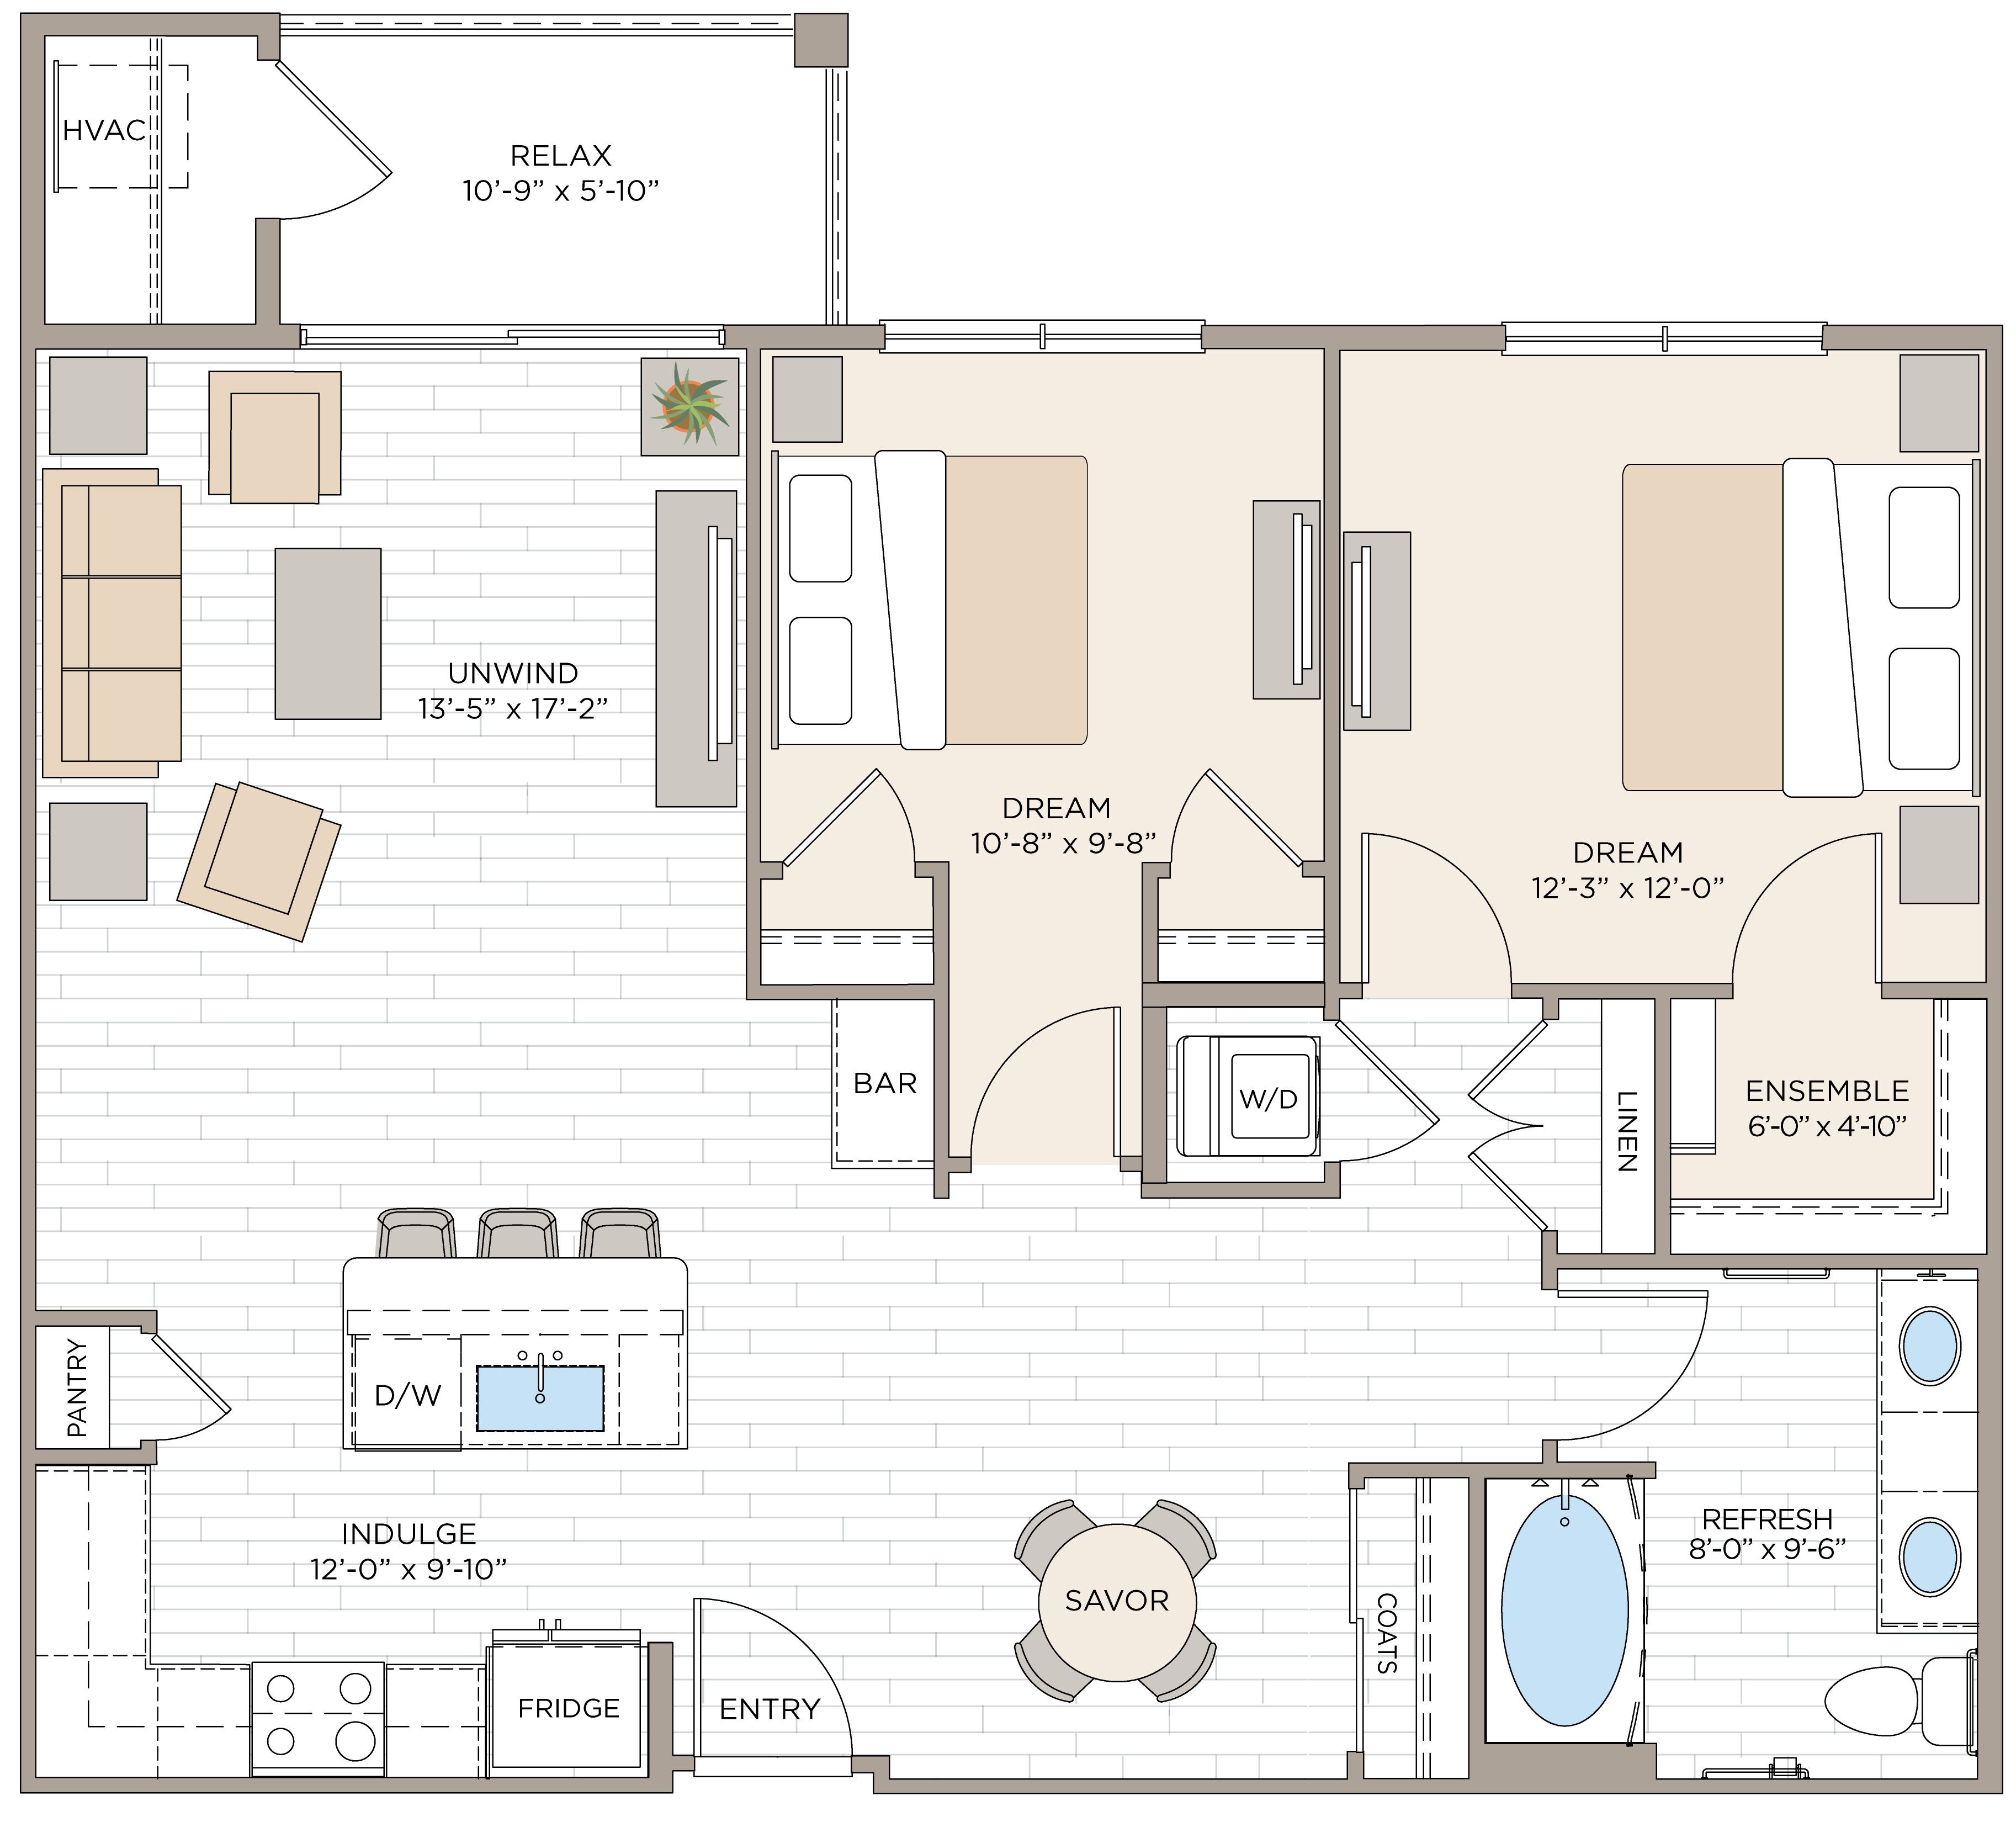 Floorplan for Unit #B1A, 2  bedroom unit at Halstead Maynard Crossing